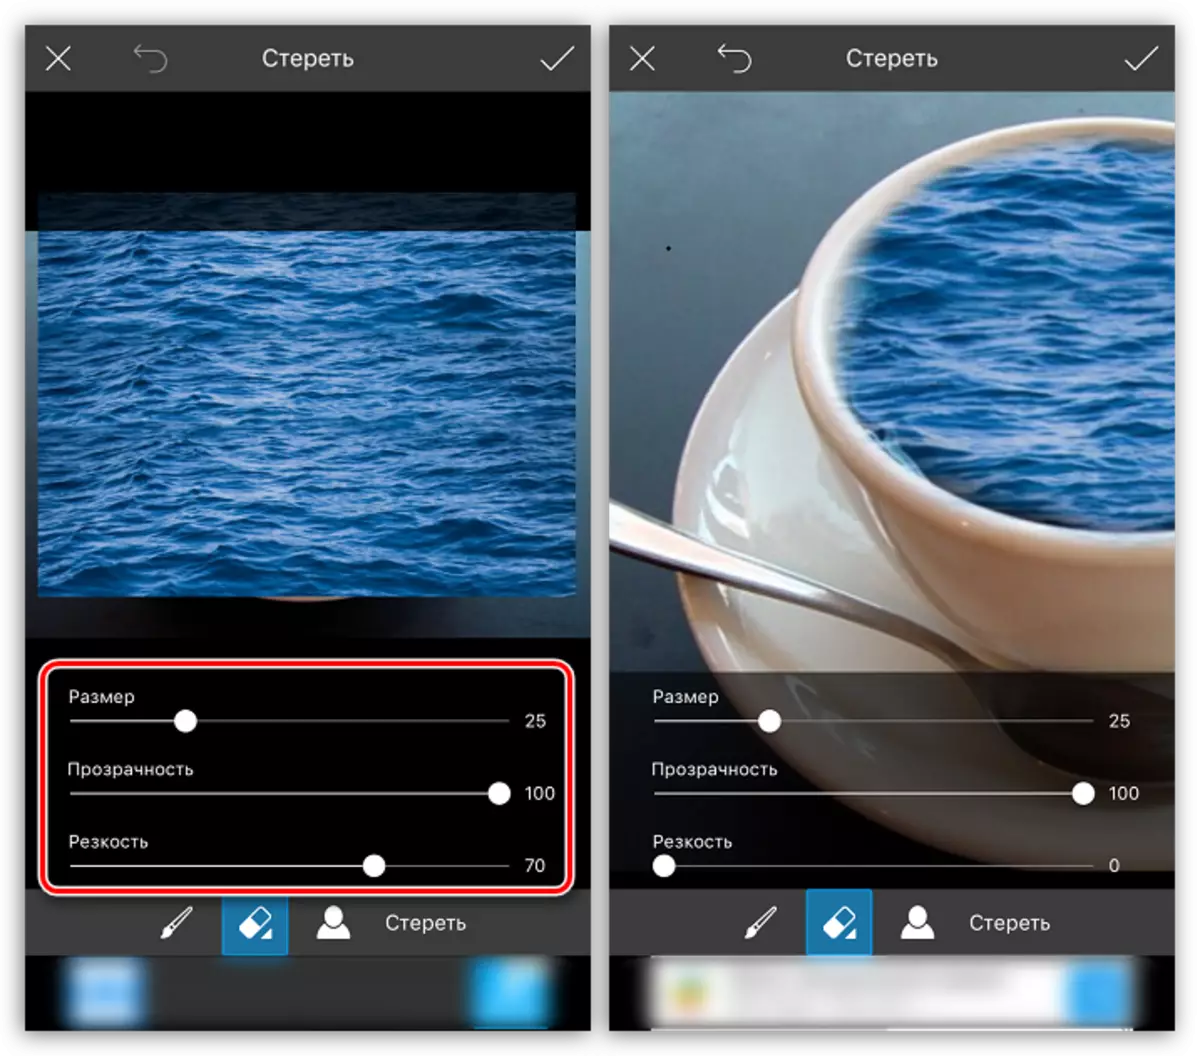 Сціранне лішніх элементаў гумкай у дадатку PicsArt на iPhone